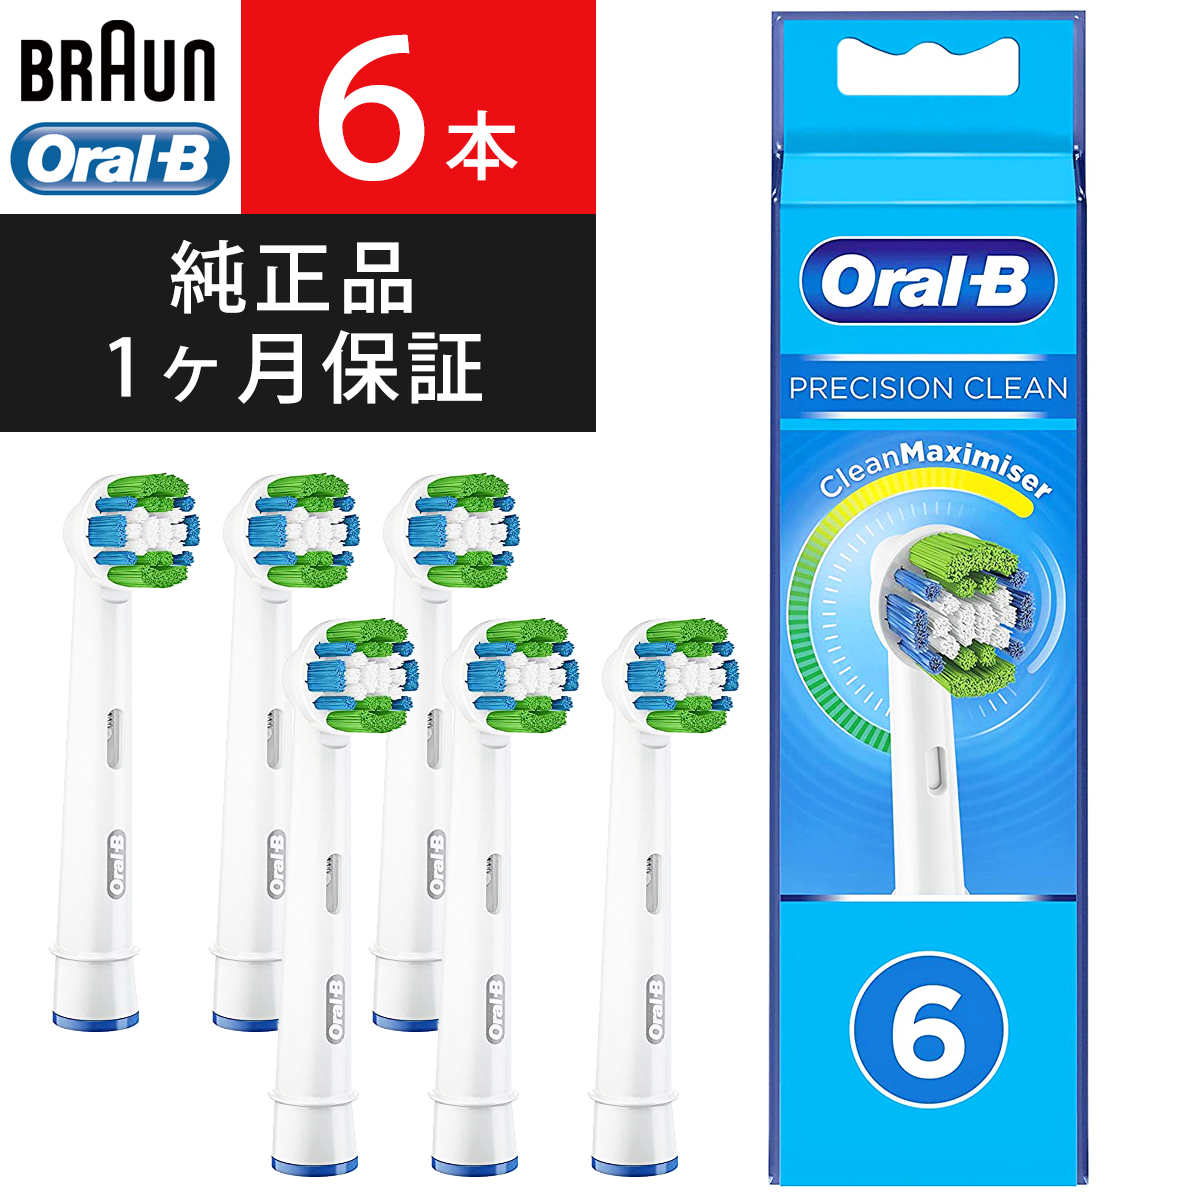 ブラウン から厳選した オーラルB 高級ブランド 替えブラシ 正規品 Braun Oral-B 電動歯ブラシ 替ブラシ 交換 6本入 オーラルケア 送料無料 ベーシックブラシ 純正品 海外正規品 ポイント消化 パーフェクトクリーン EB20